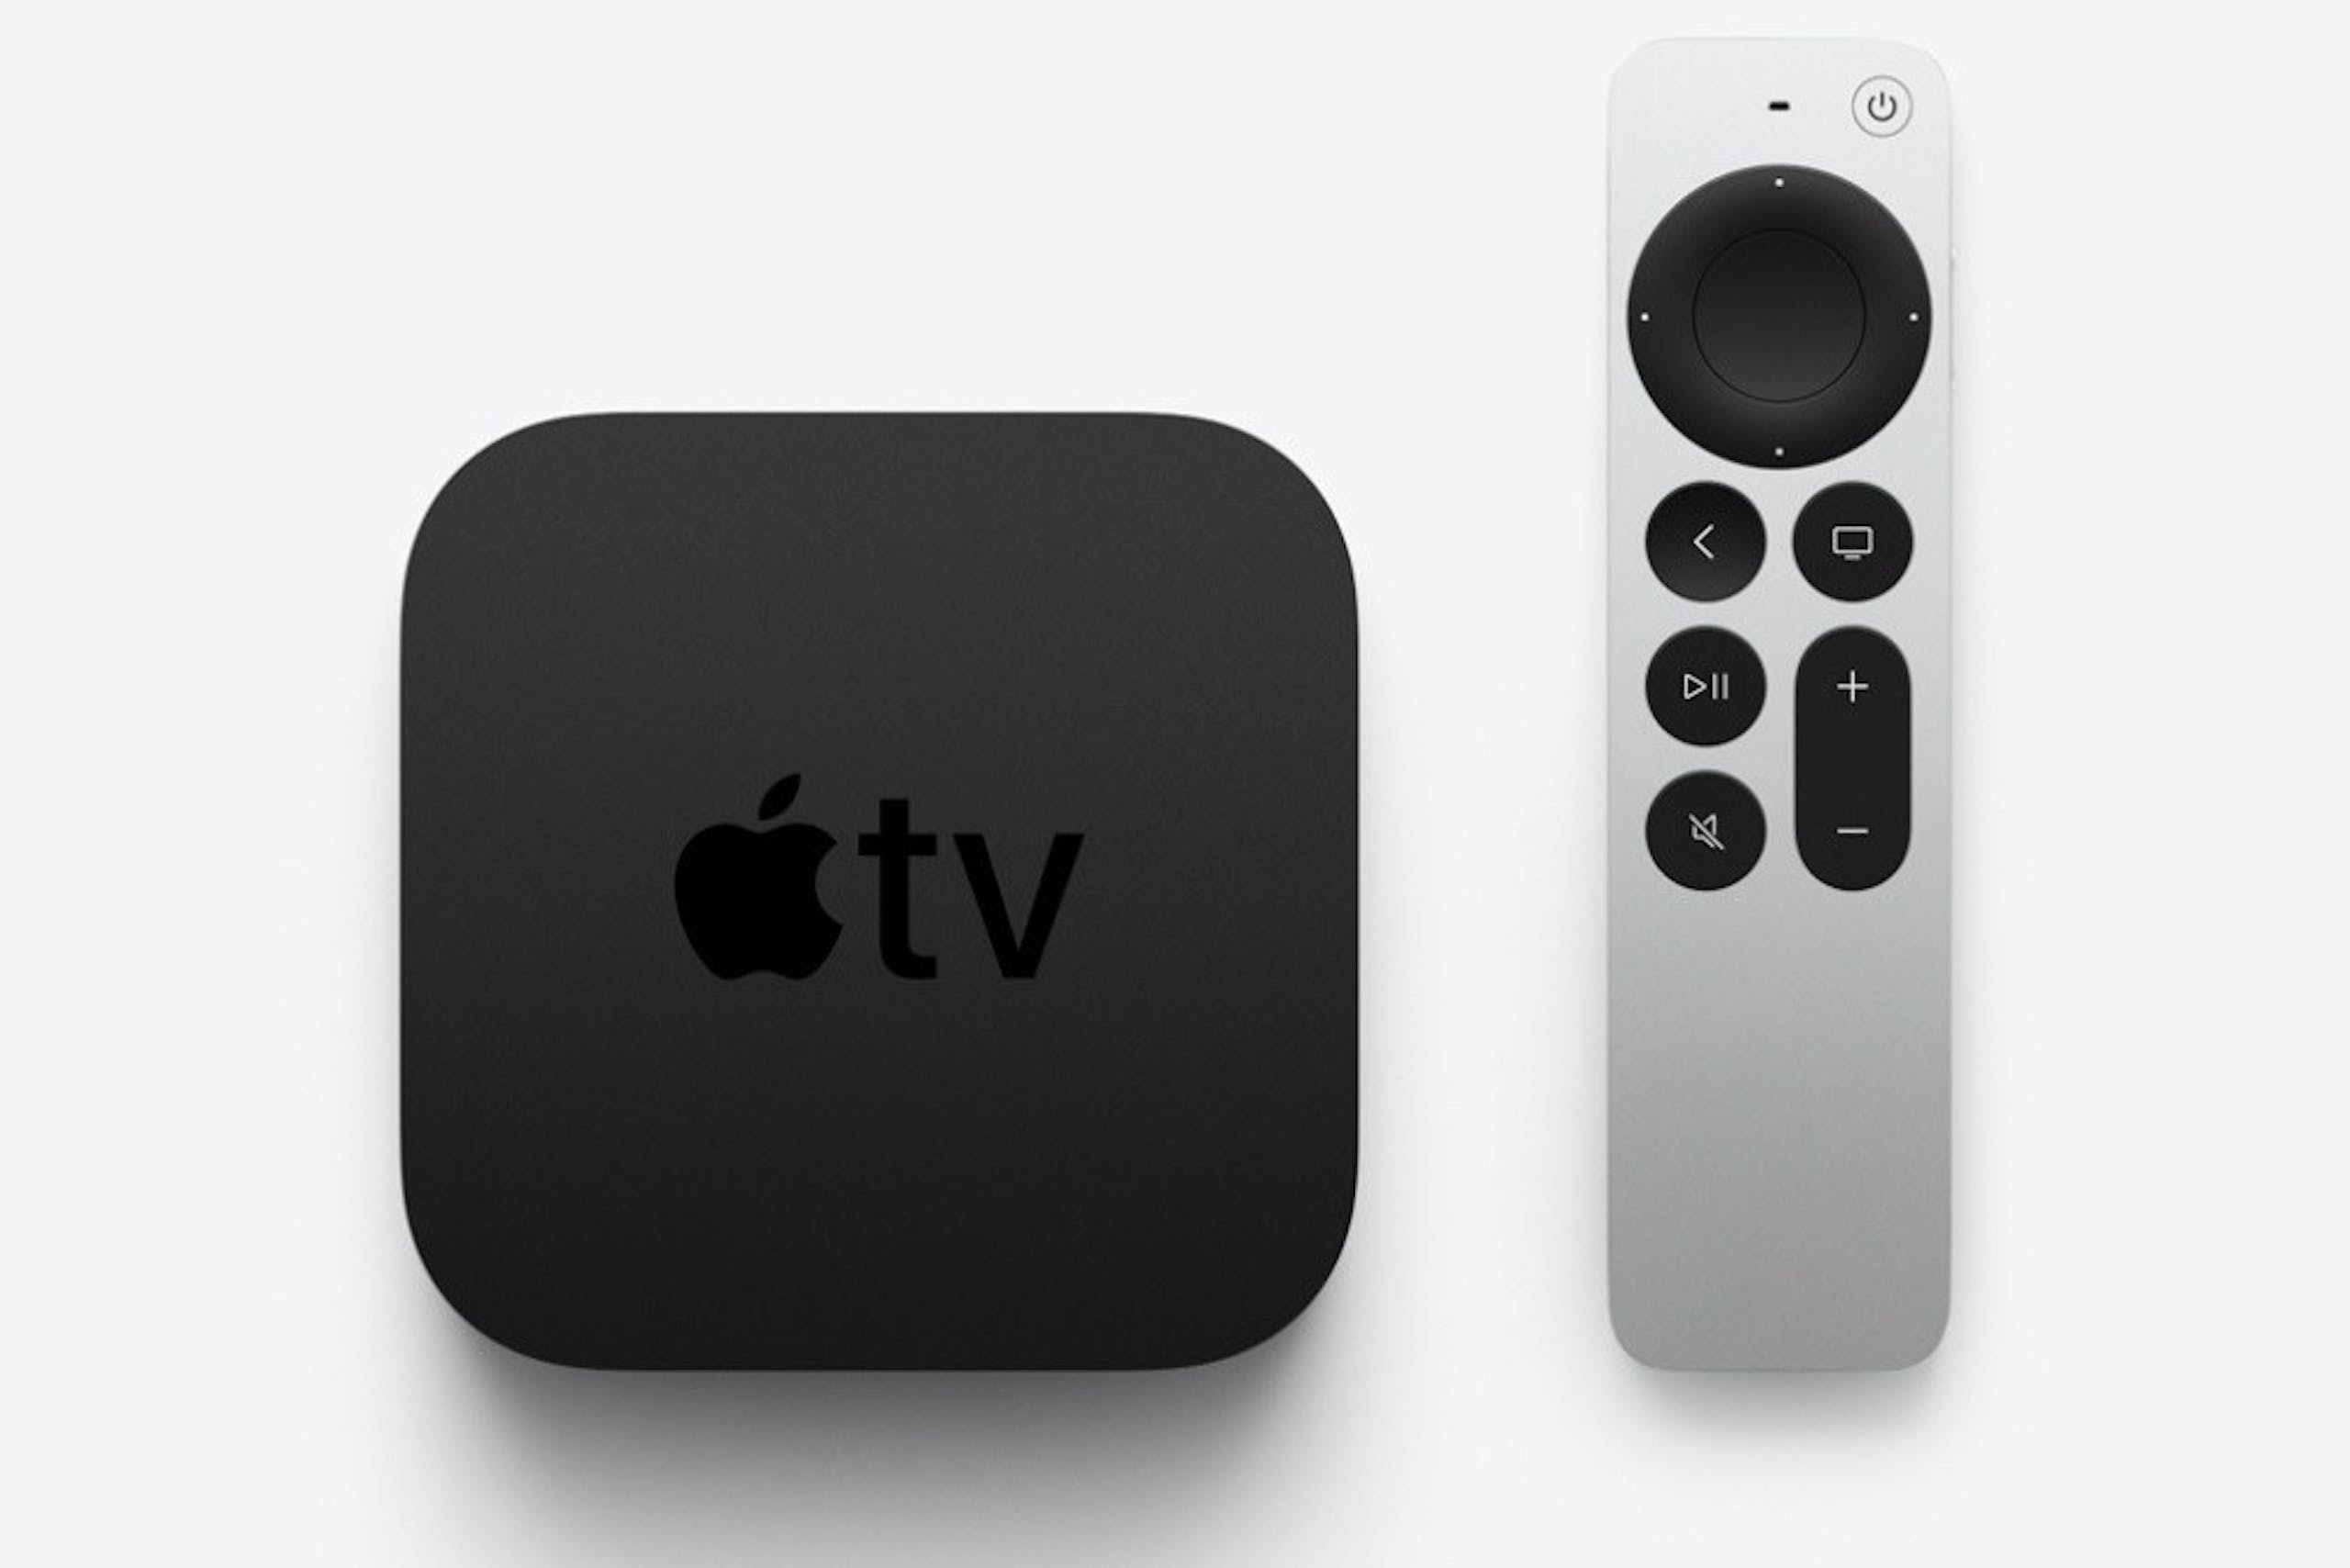 照片中提到了DII、+、étv，跟蘋果電視有關，包含了蘋果電視 4k 64GB、Apple TV HD（第 5 代）、Apple TV 4K（第二代）、Apple TV HD（第 4 代）、蘋果電視4K